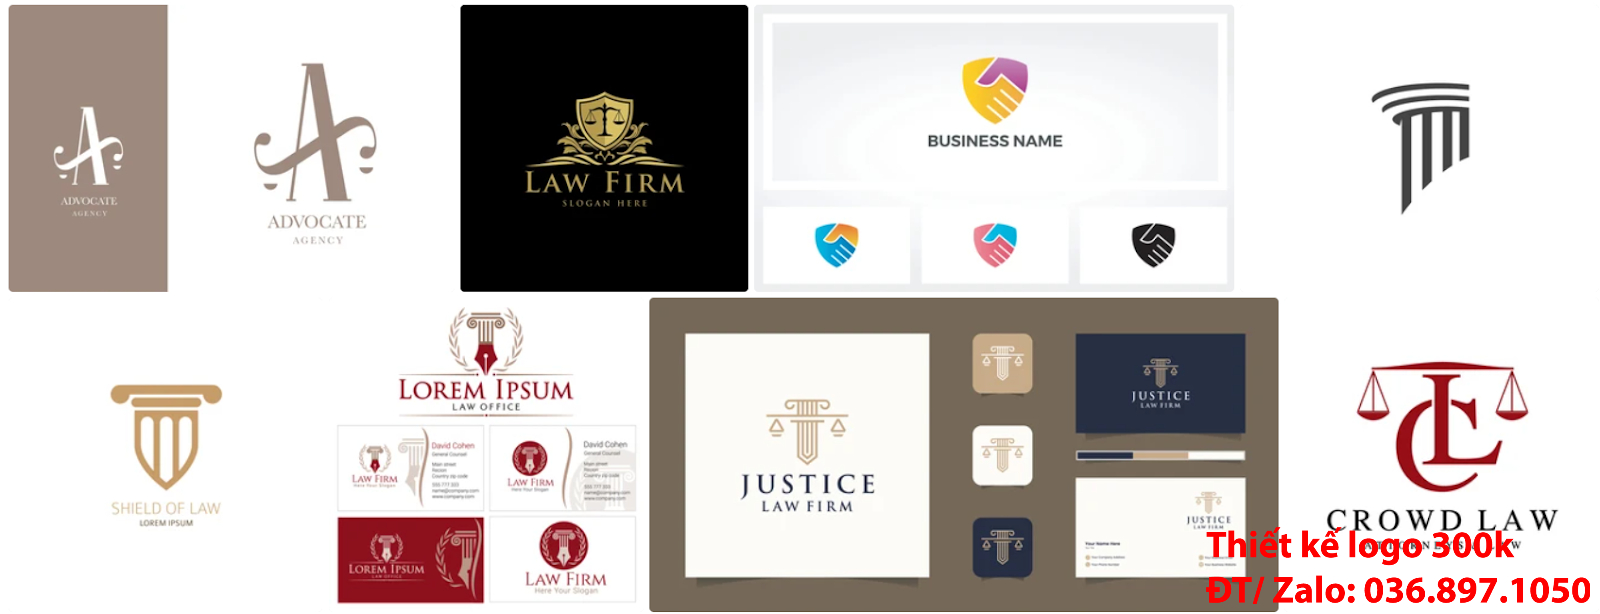 Tại Hà Nội cũng có công ty nhận thiết kế các Mẫu logo công ty luật sư đẹp online uy tín chất lượng giá 300k